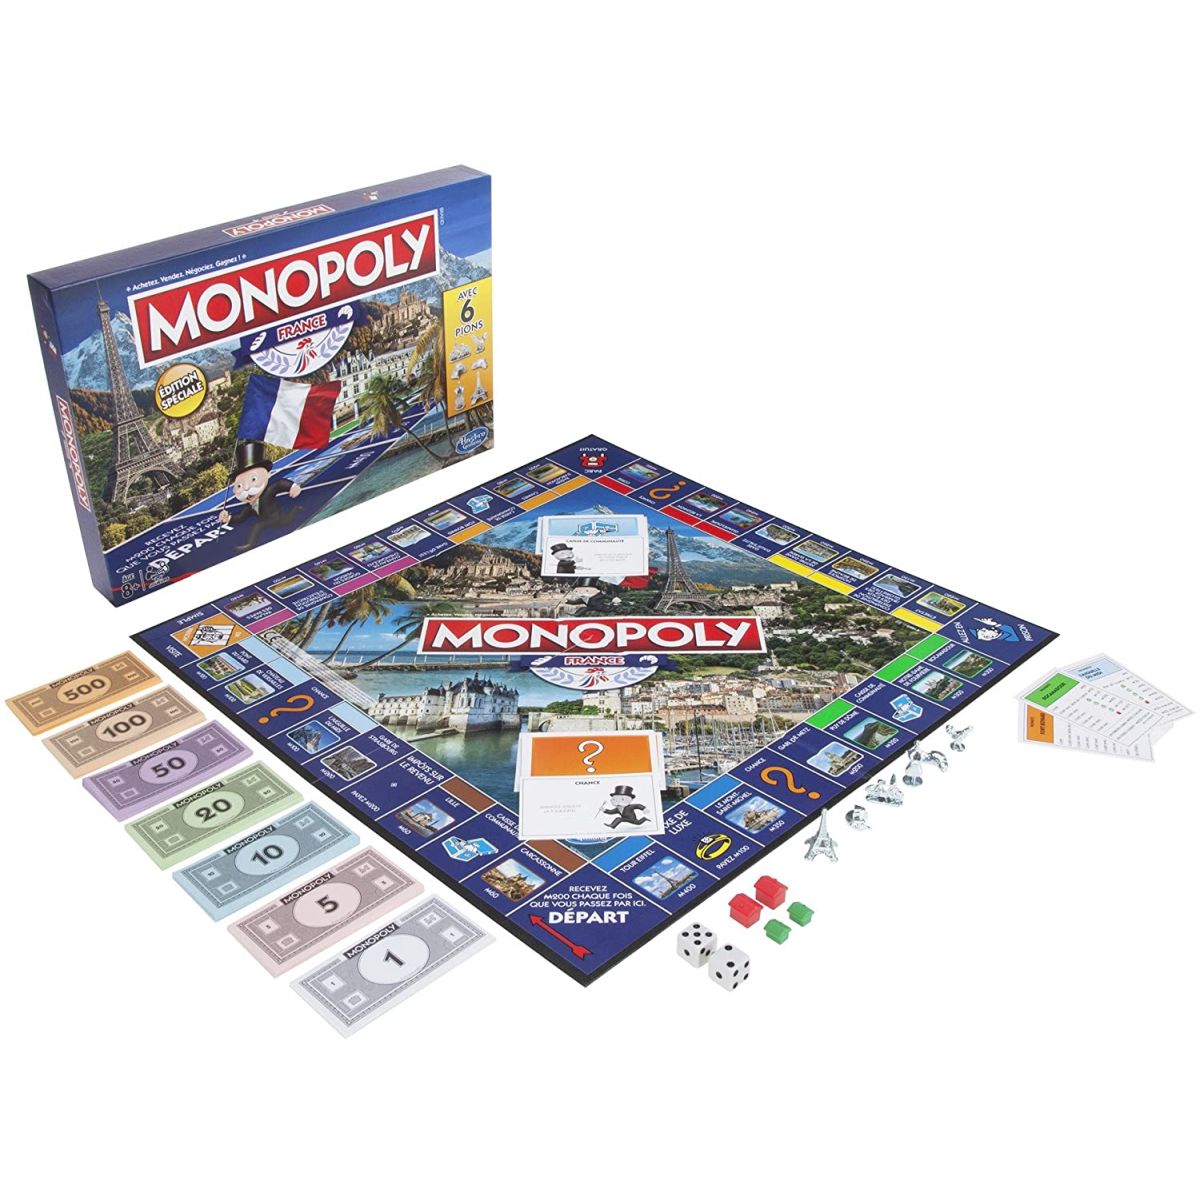 Monopoly Mauvais Perdant pas cher : où acheter ? - Jeux de société